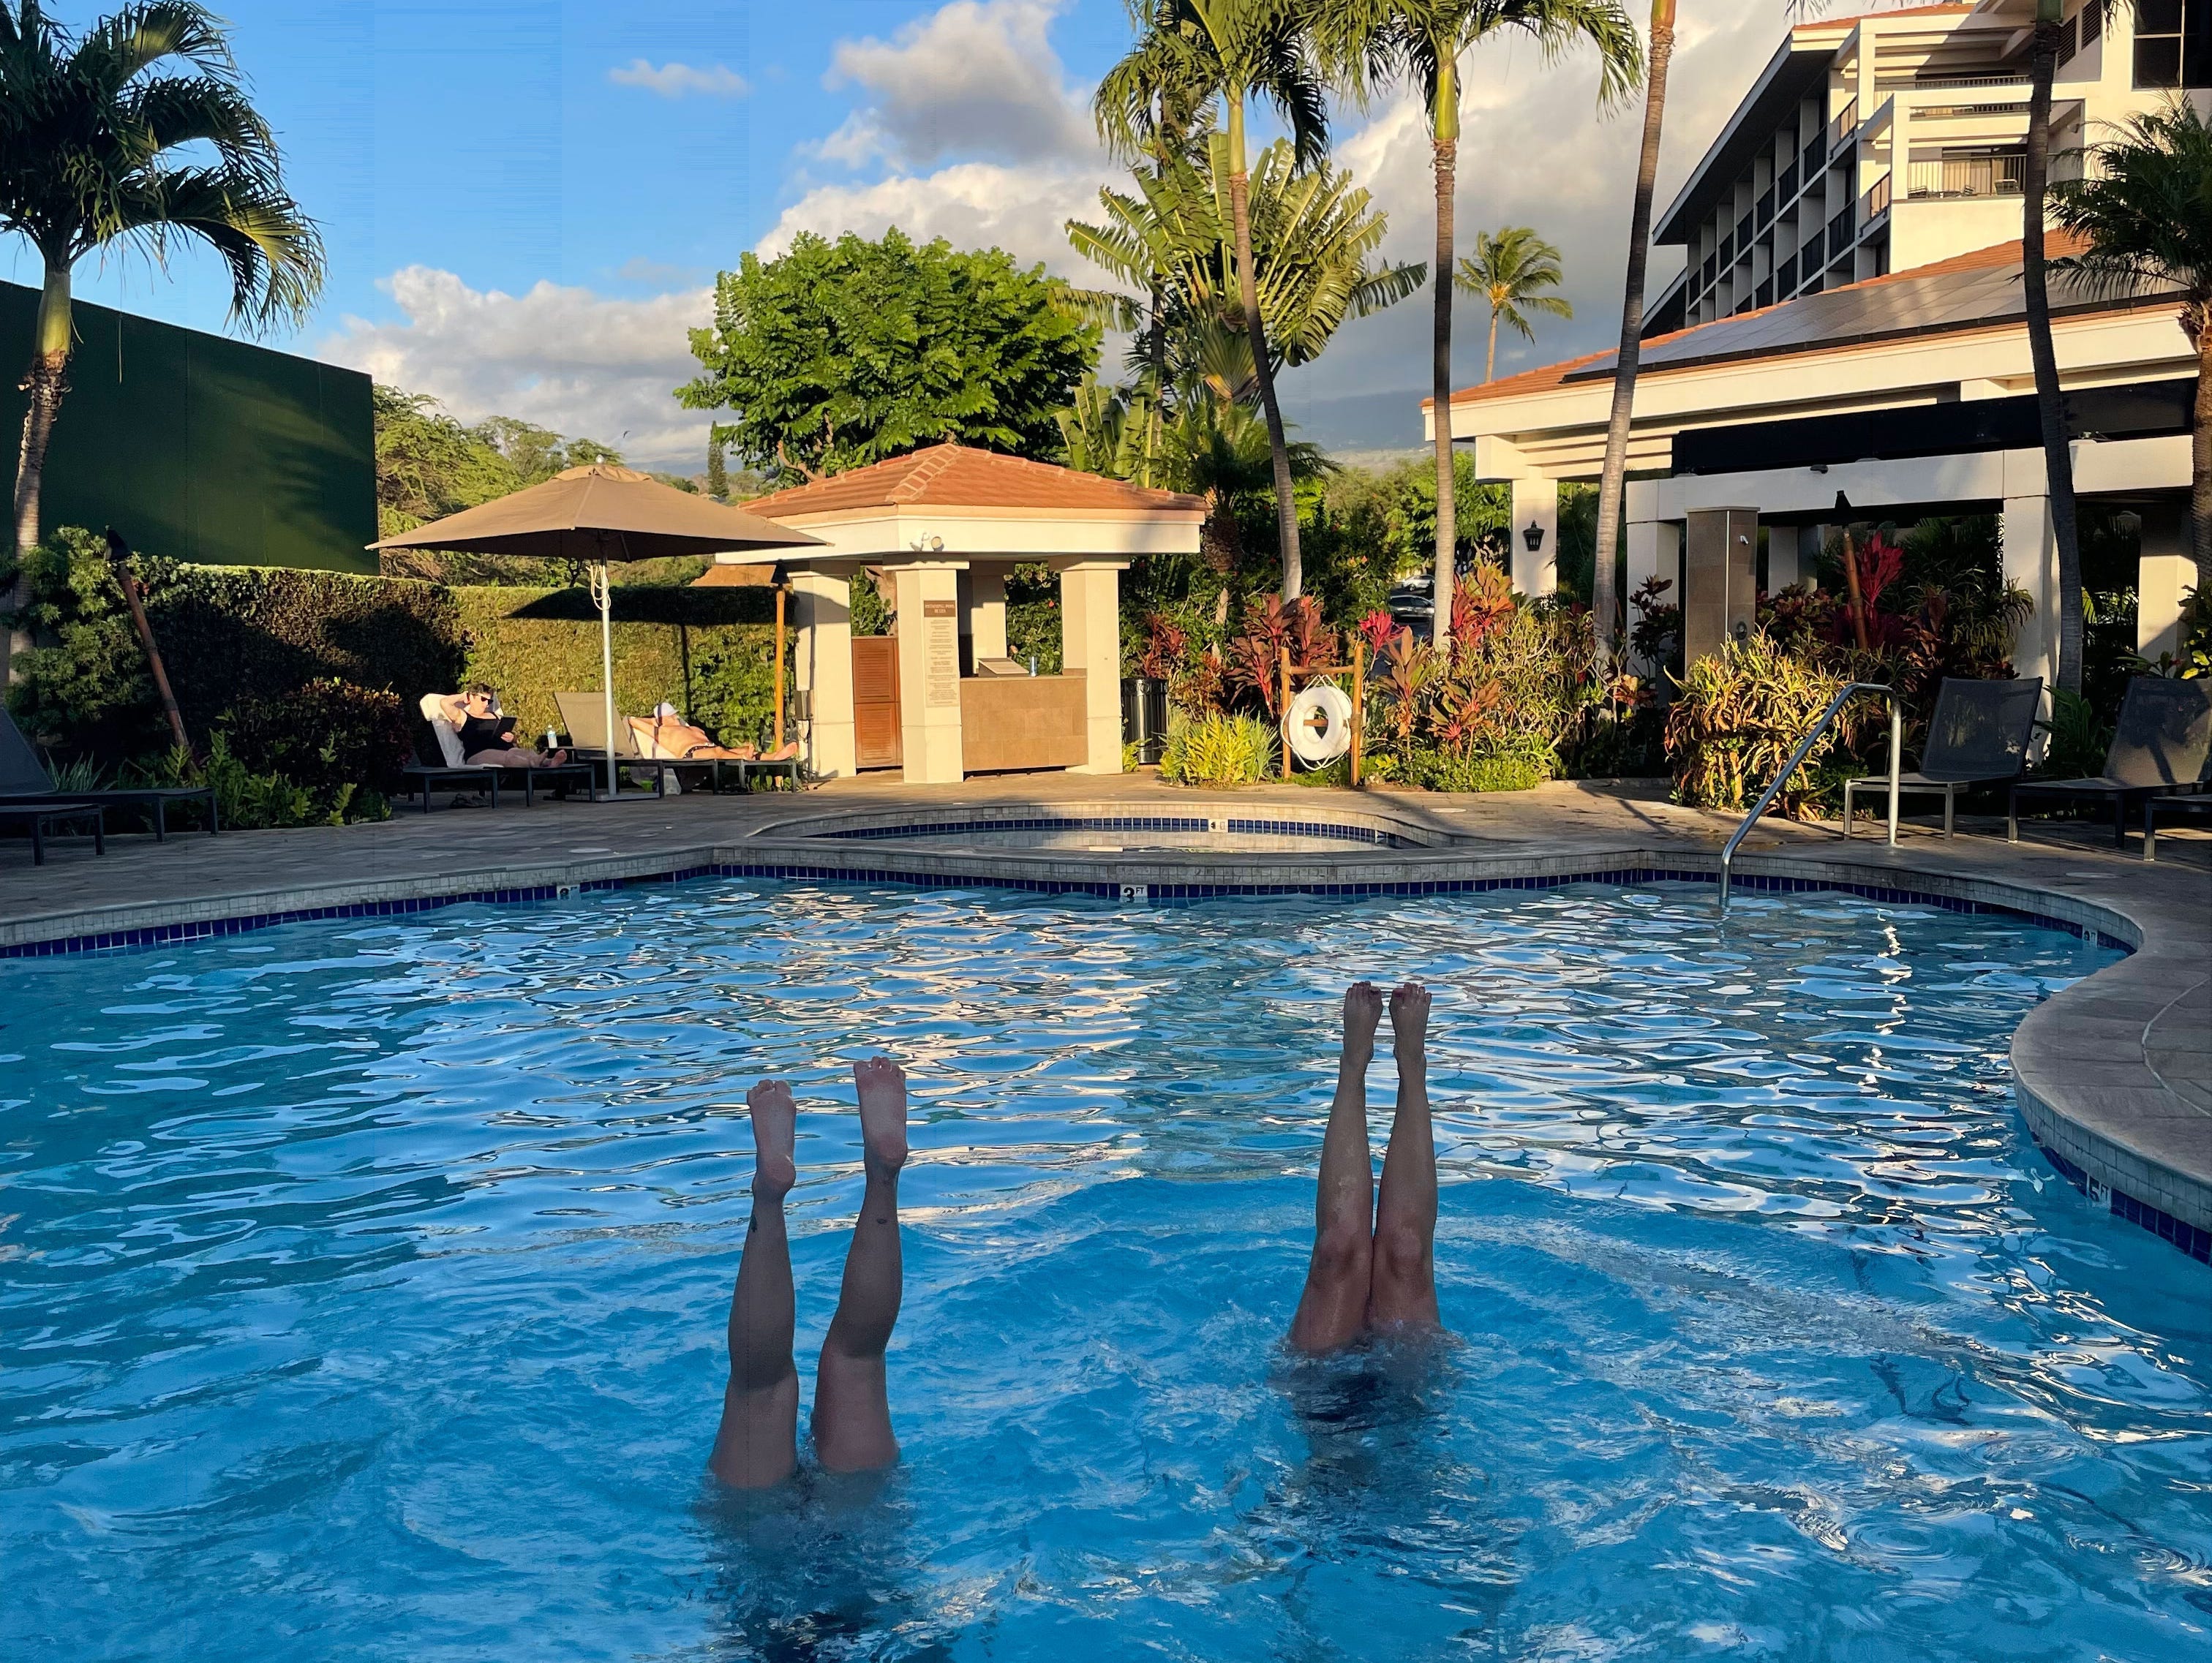 Zwei Personen machen Handstände im Pool, Maui, Hawaii